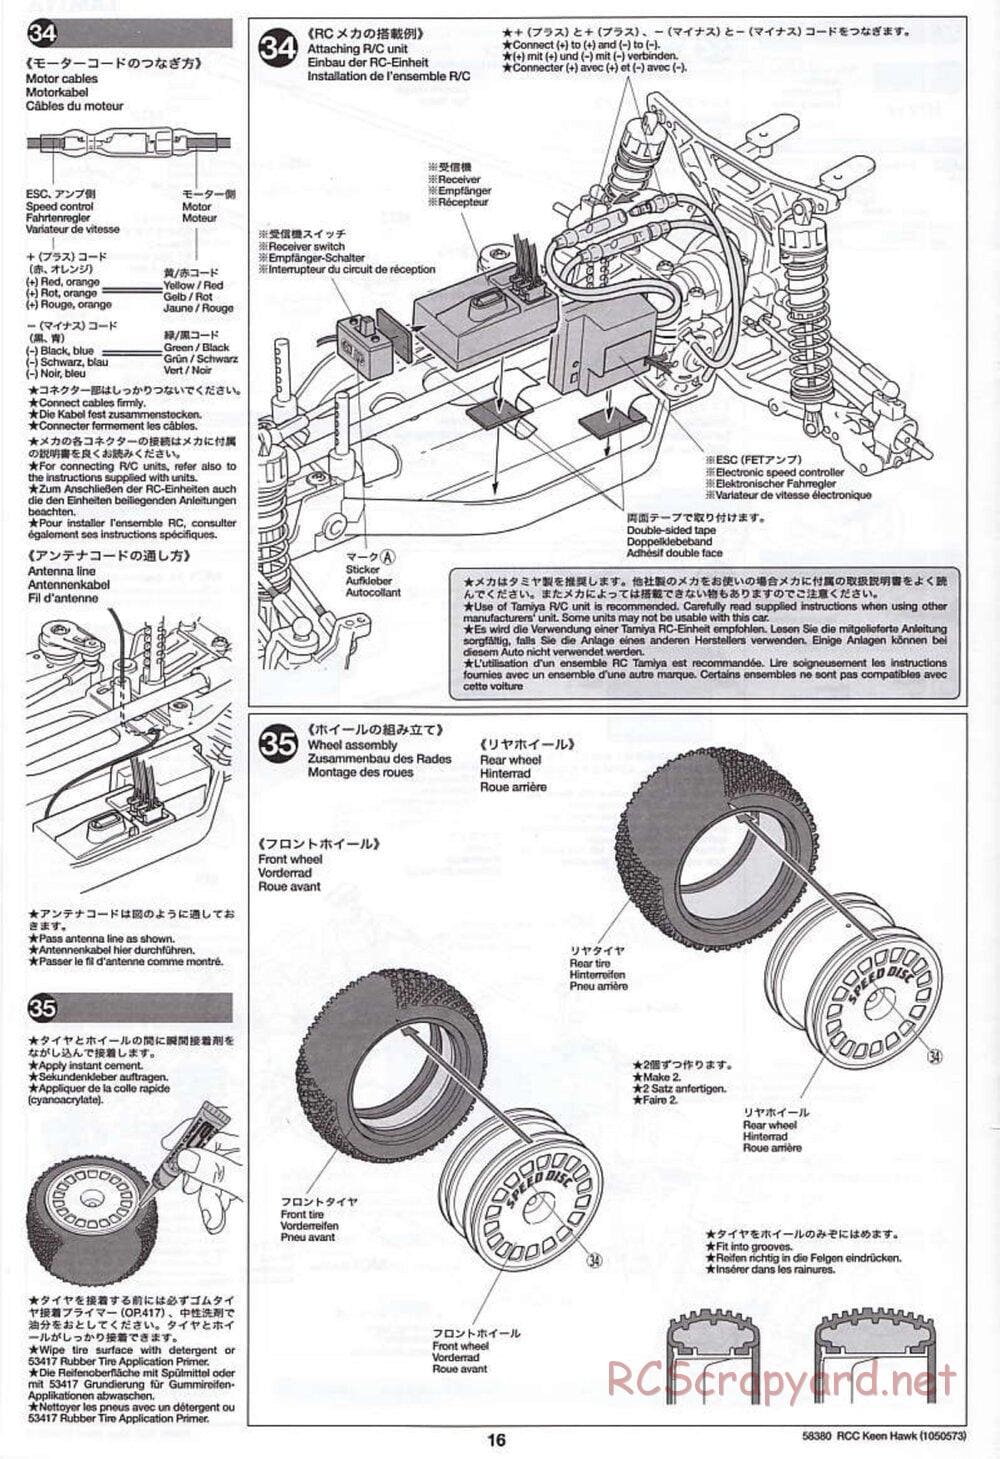 Tamiya - Keen Hawk Chassis - Manual - Page 16